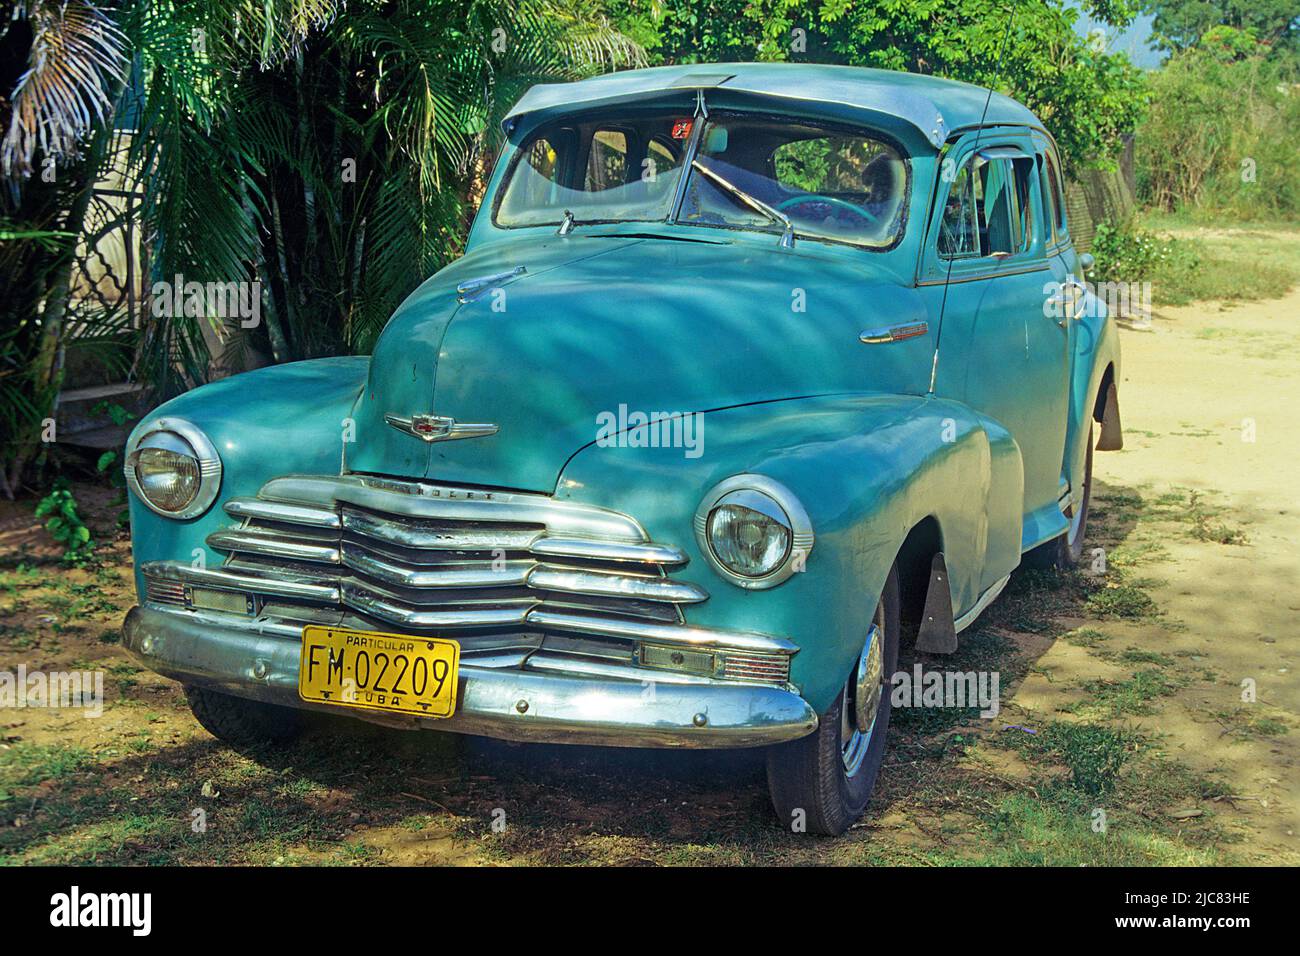 American classic car at Havana, Cuba, Caribbean Stock Photo